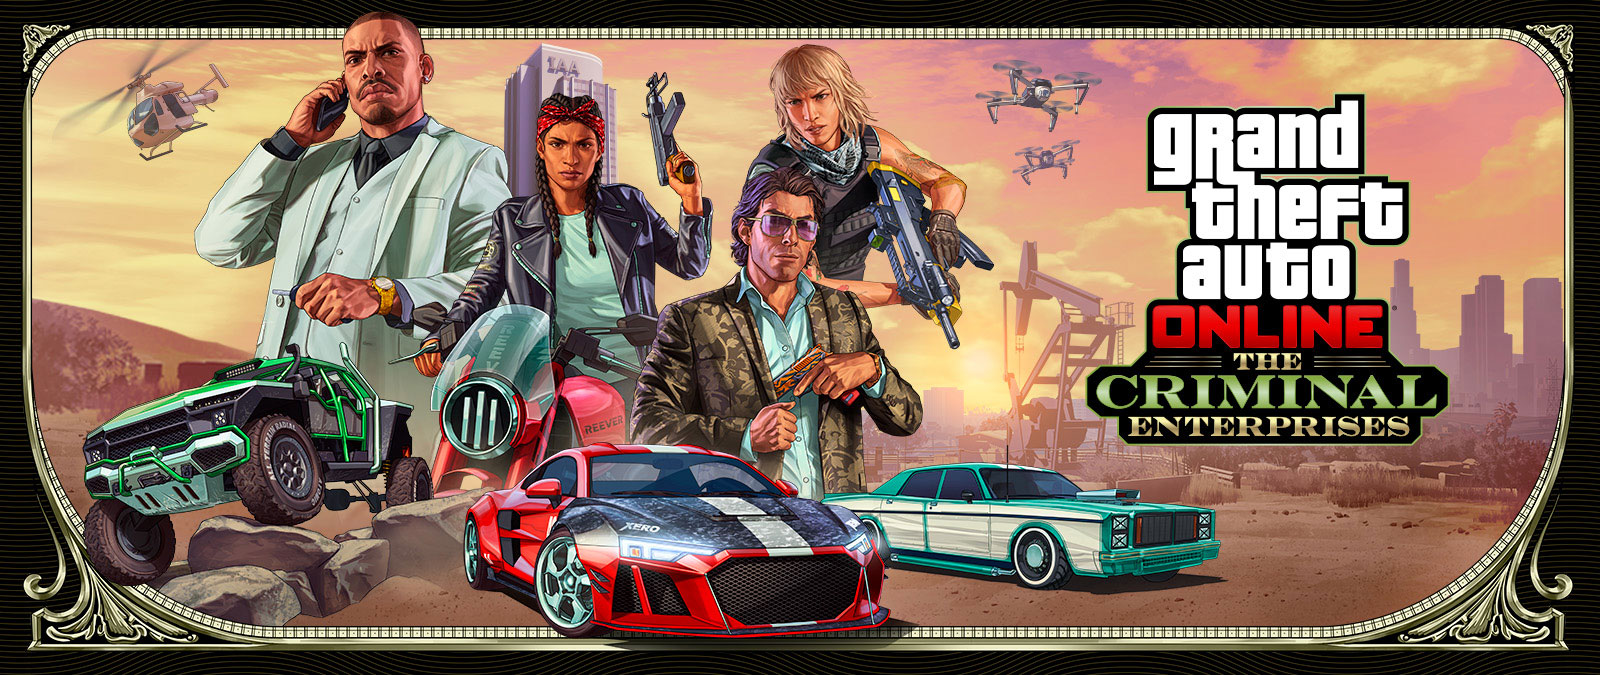 《俠盜獵車手線上模式：犯罪企業》，三輛時髦車輛飛馳過前景，四位角色在高處擺姿勢。